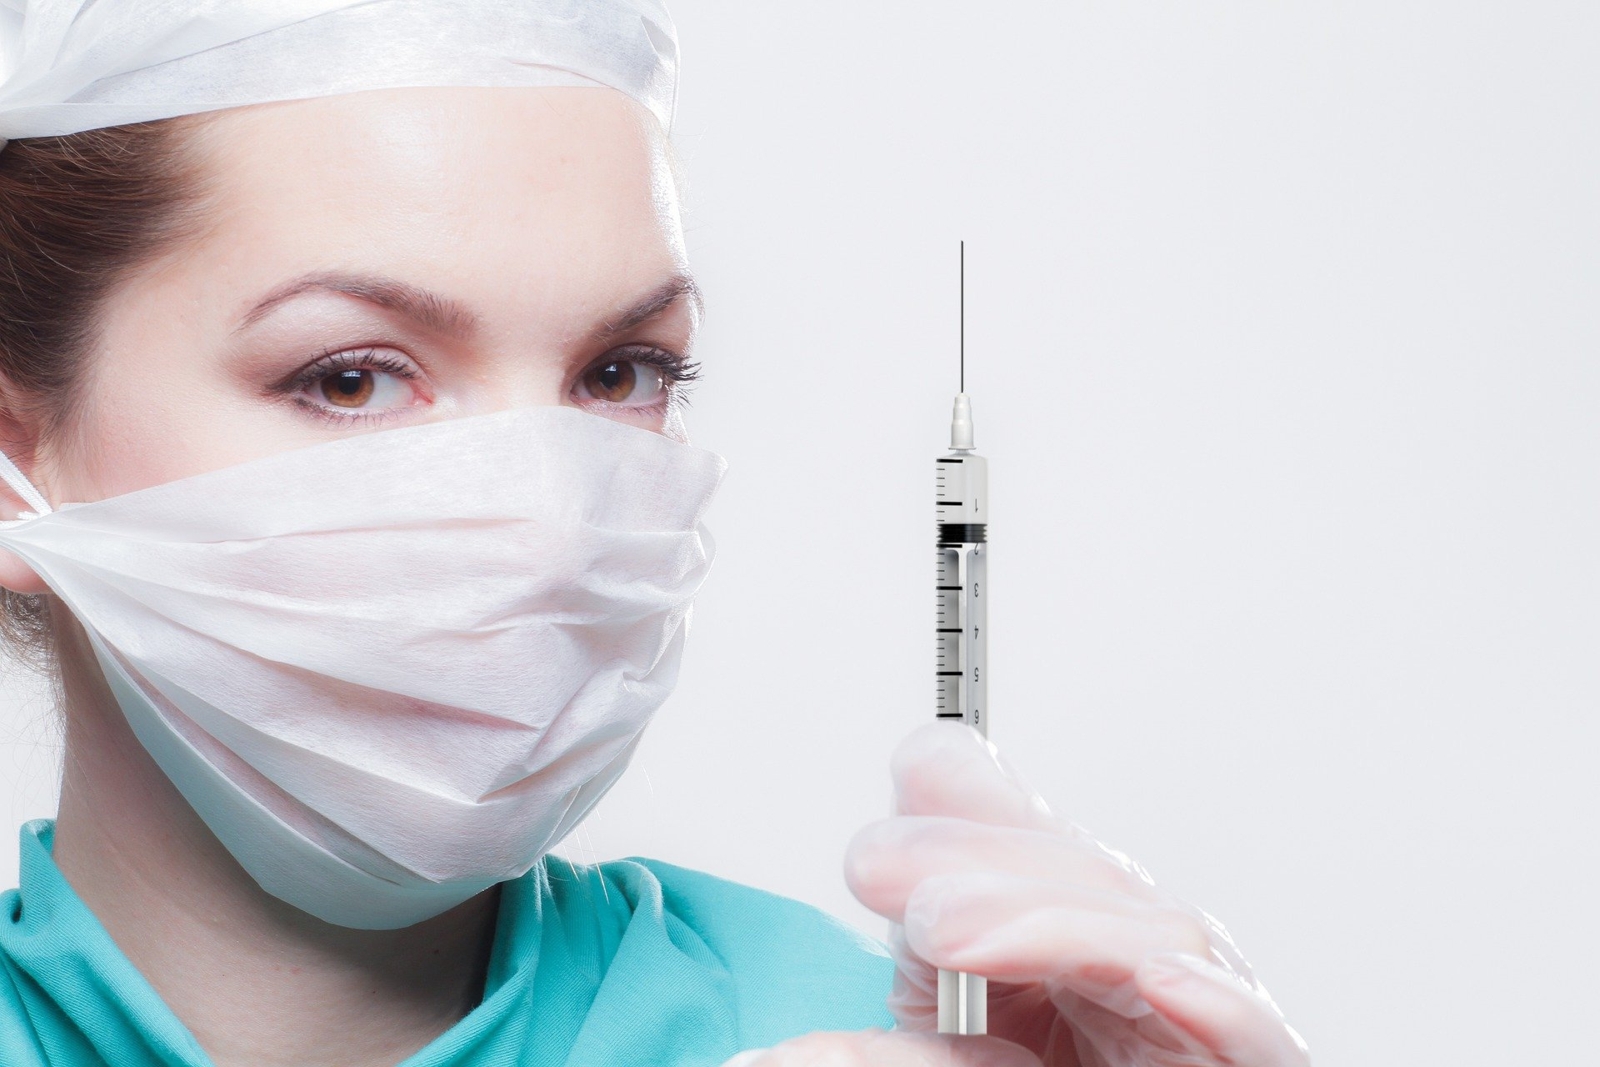 Жители Подмосковья смогут сделать прививку от гриппа в 24 медицинских пунктах